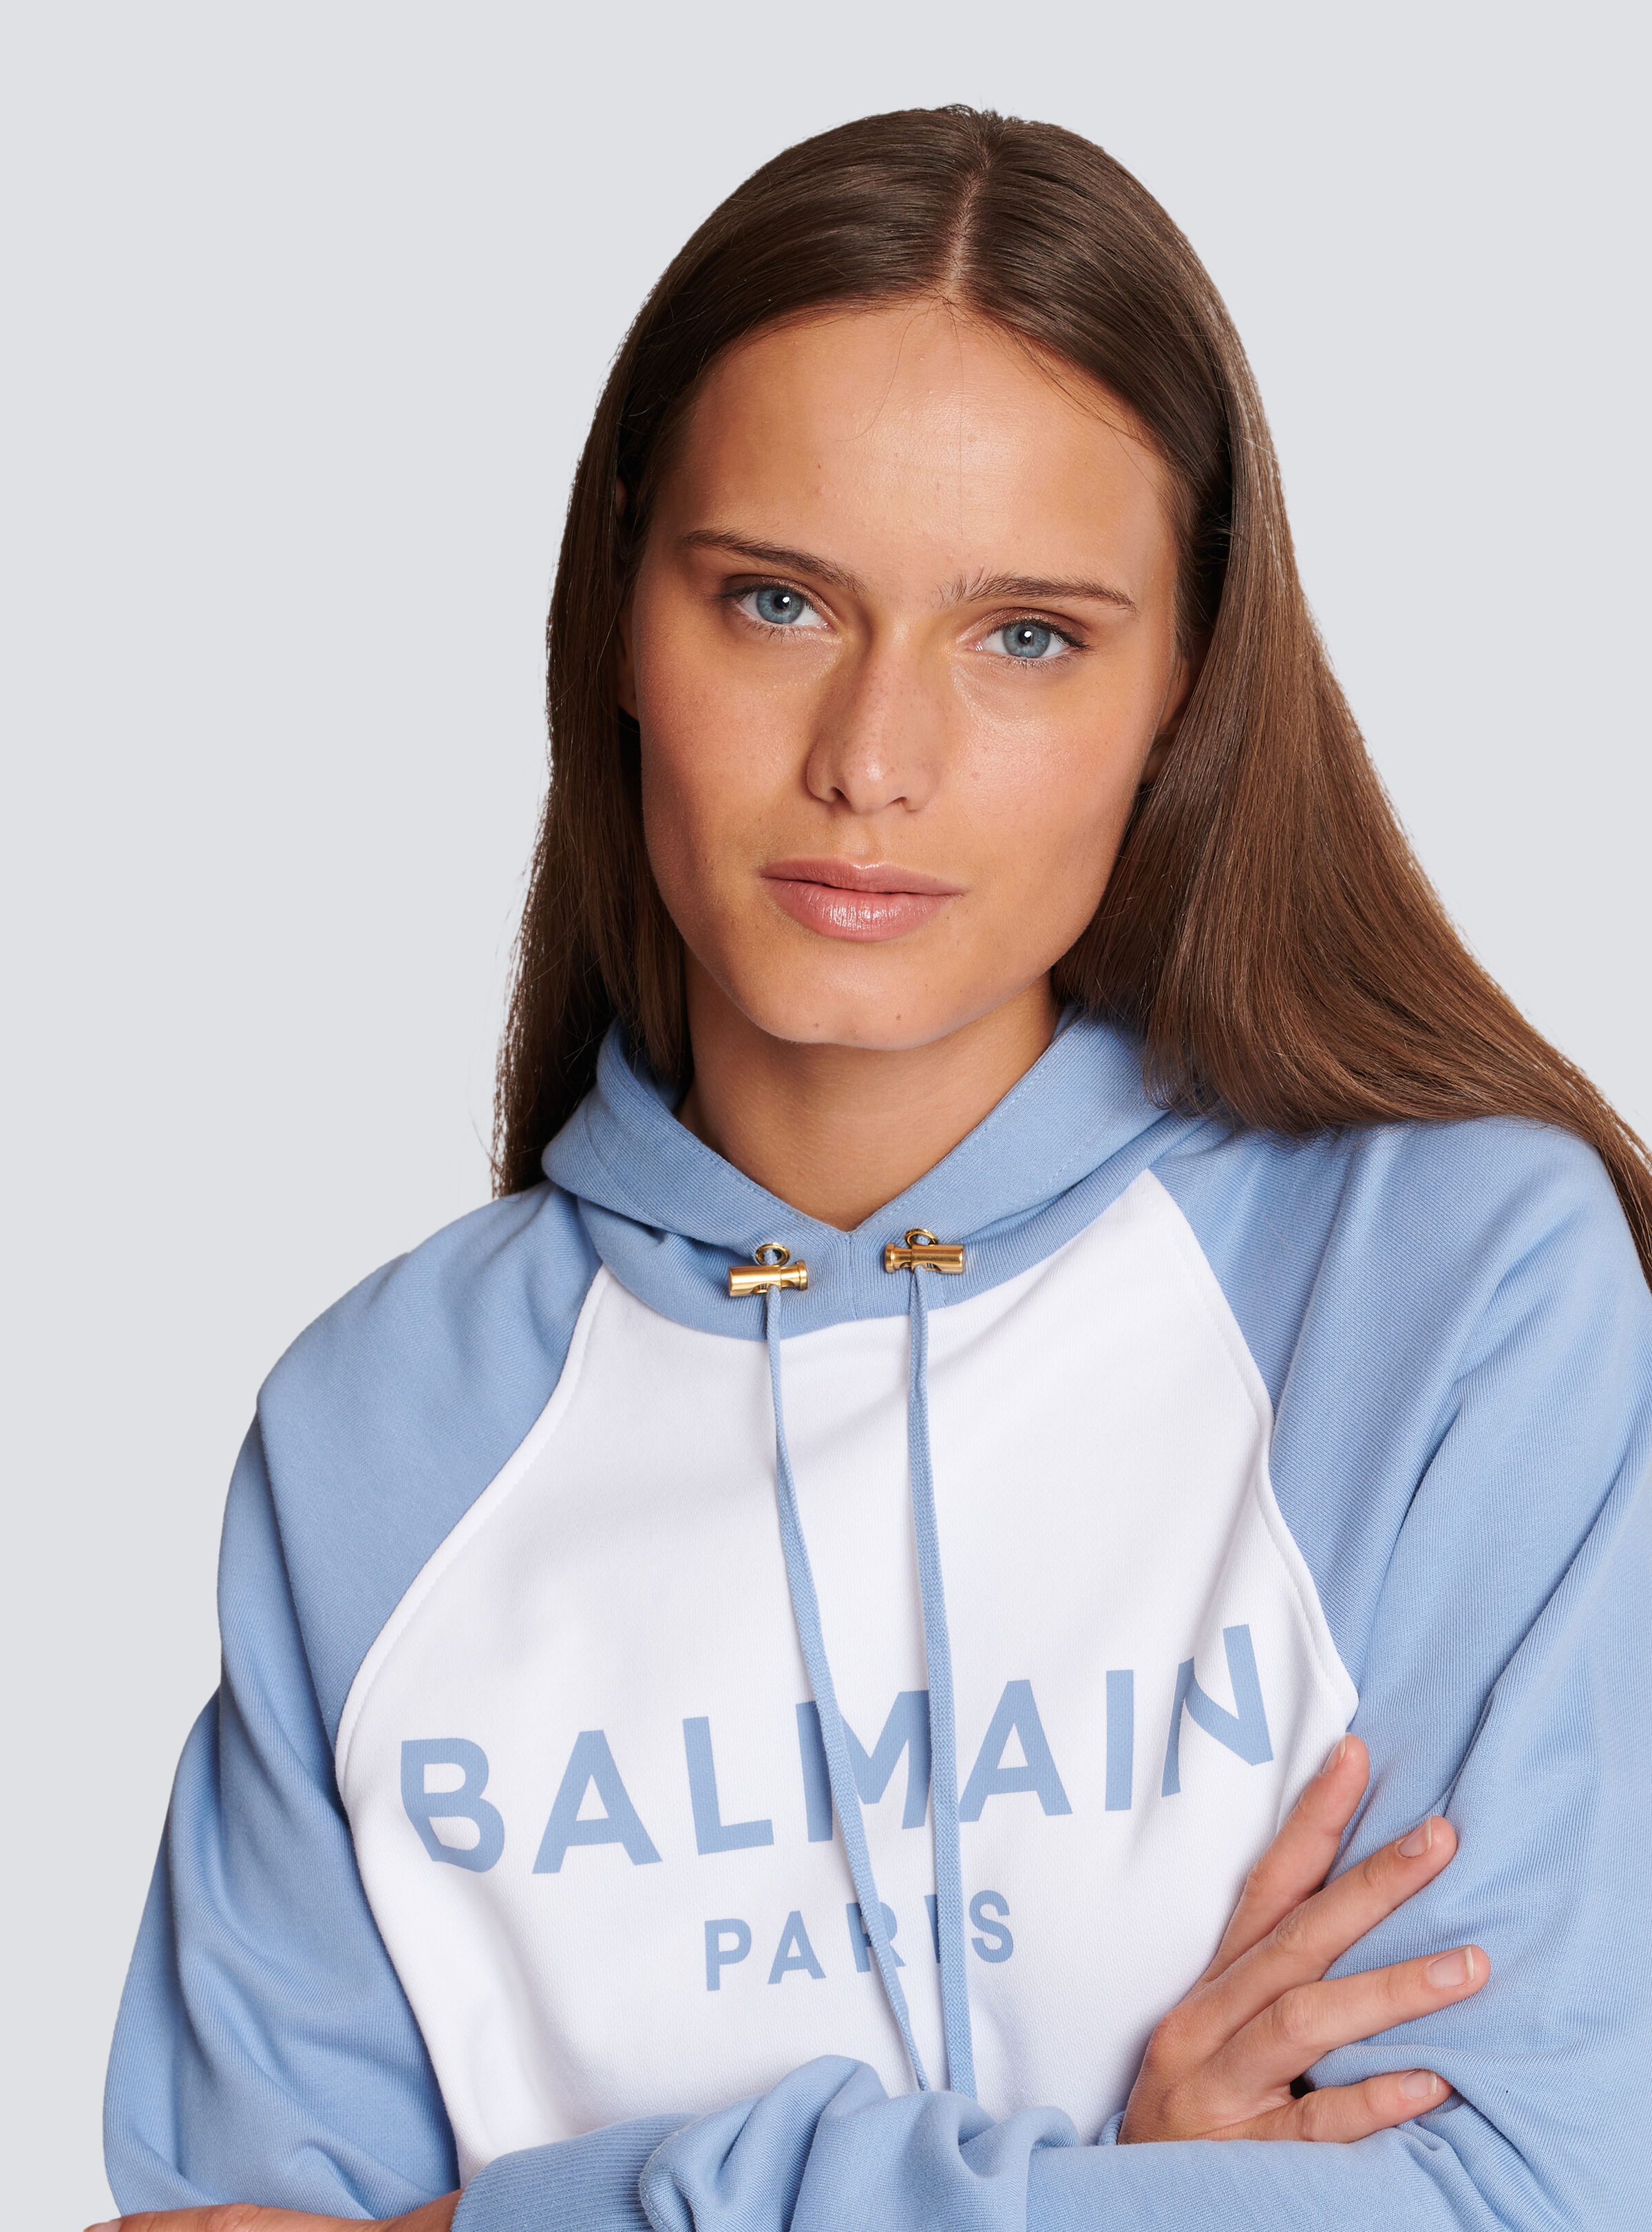 Balmain Paris hoodie - 7